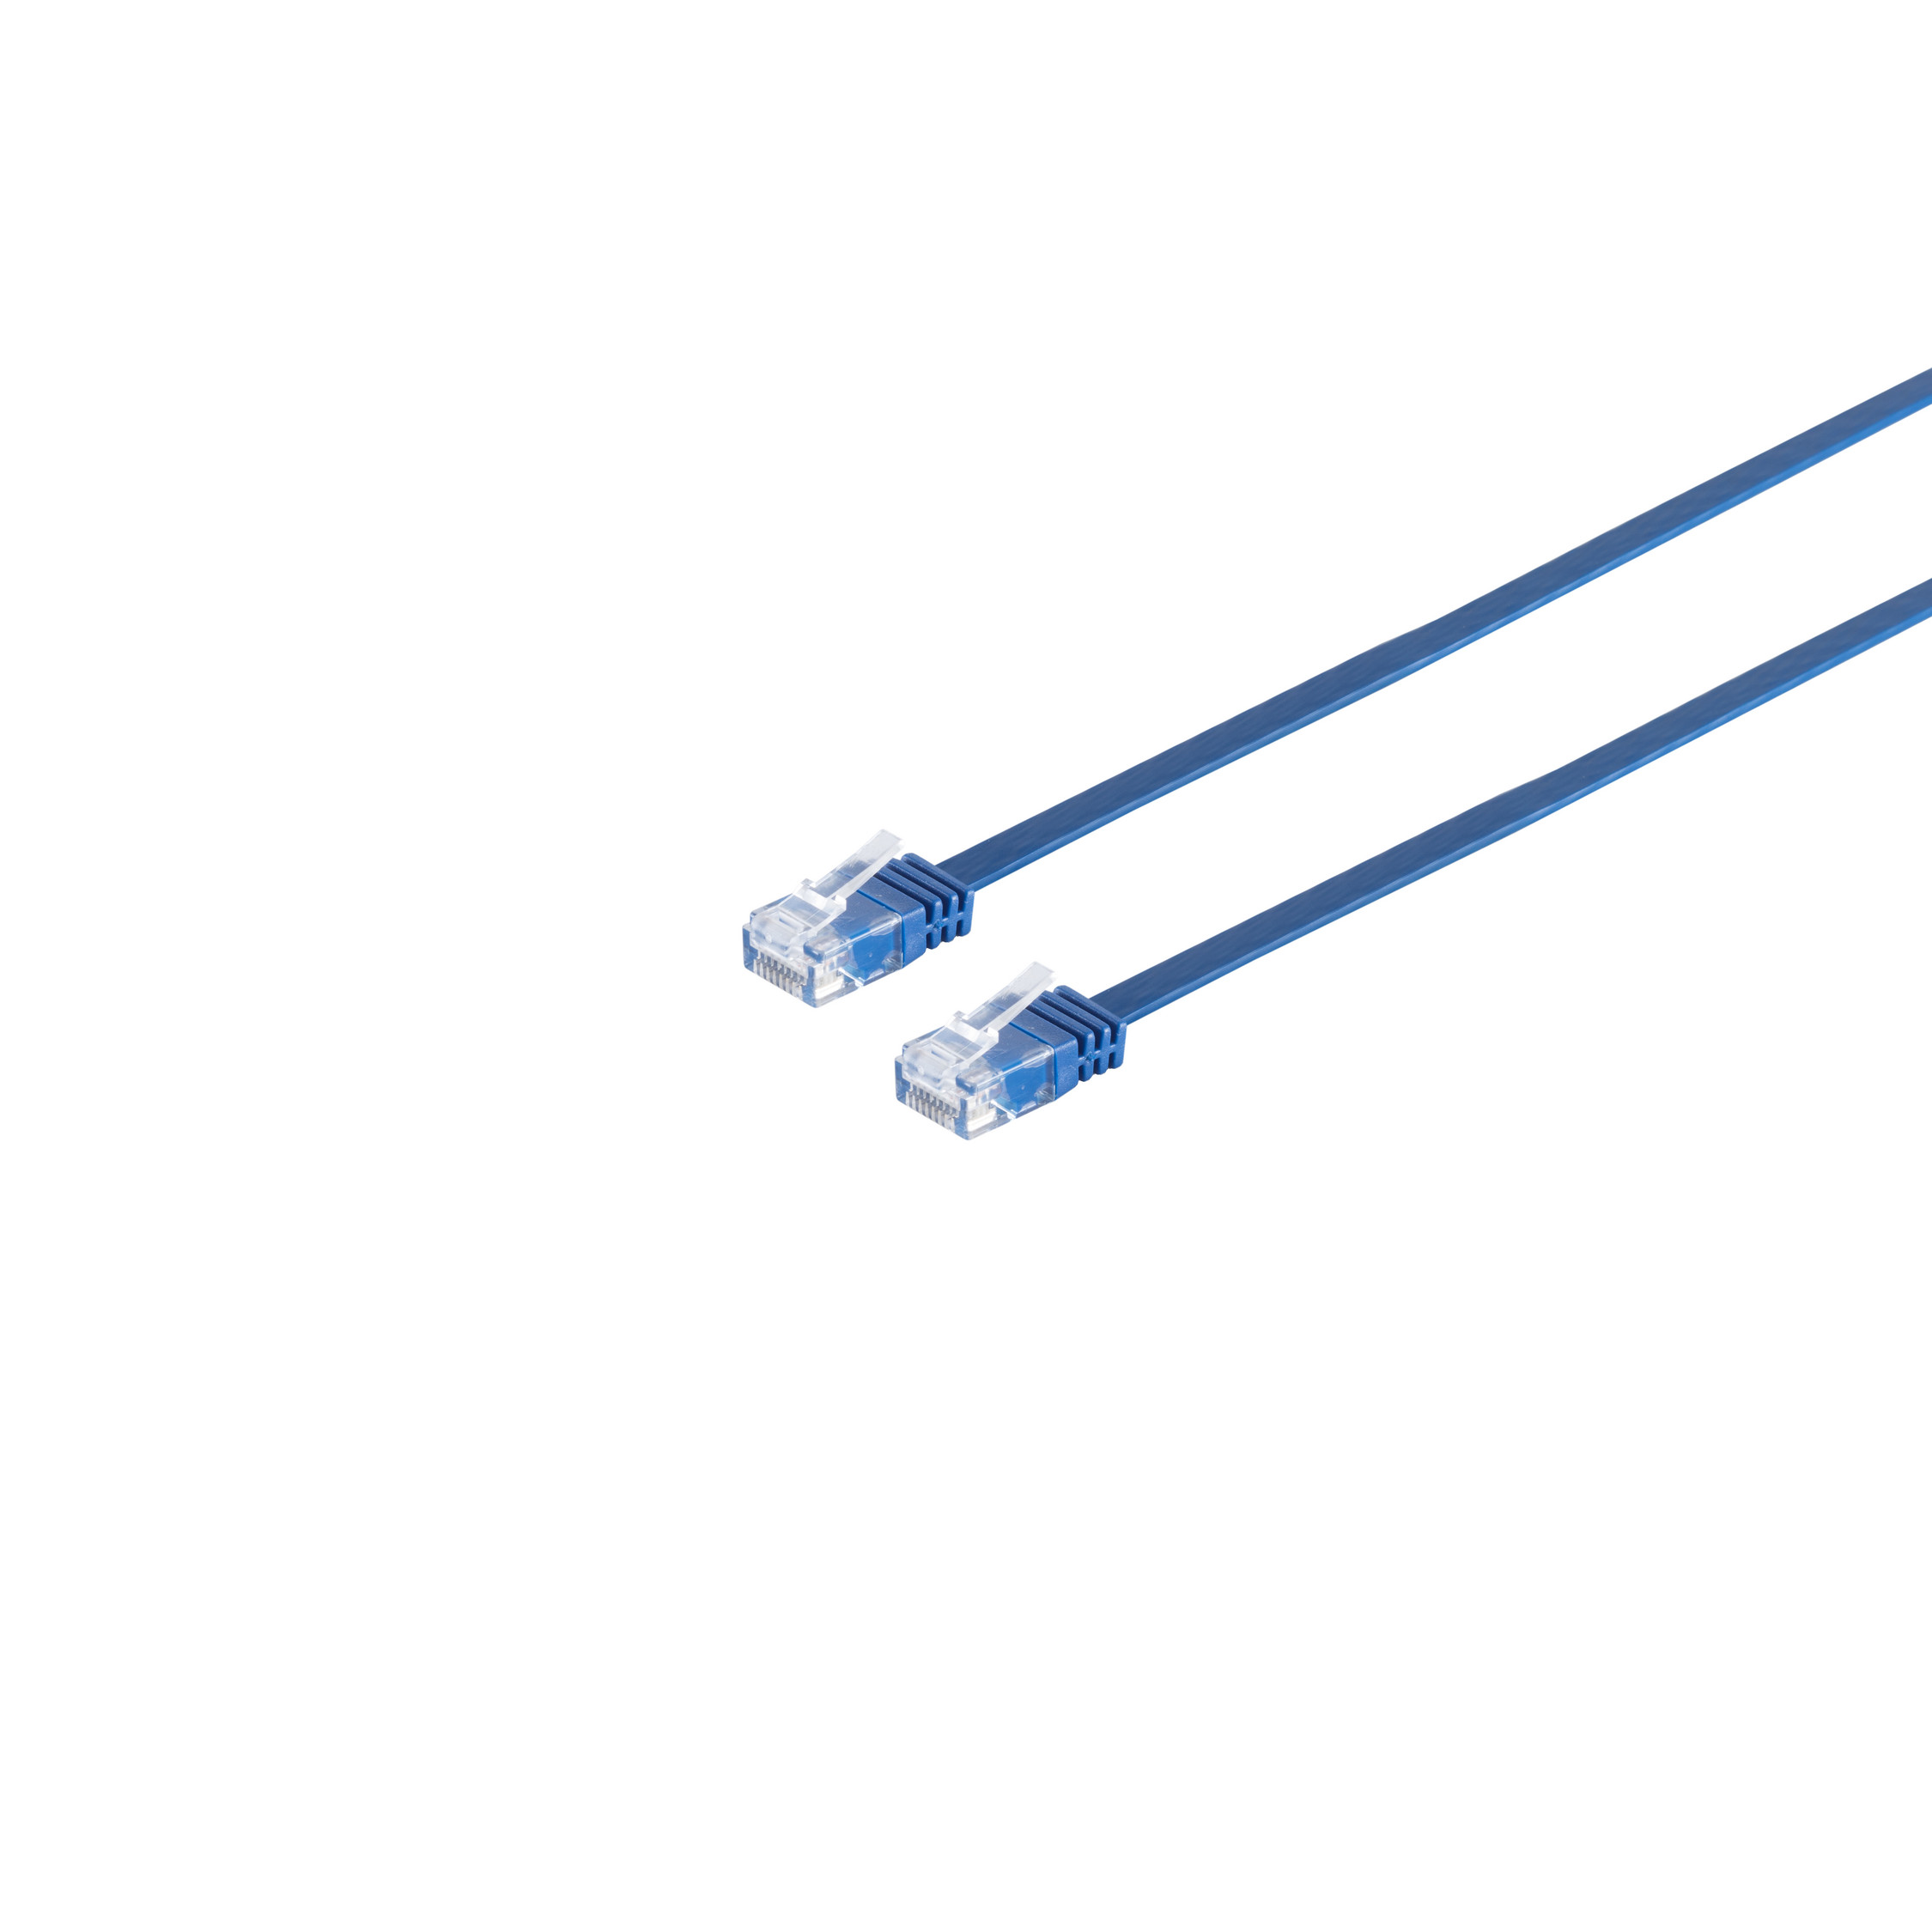 S/CONN MAXIMUM CONNECTIVITY Patchkabel-Flachkabel m U/UTP 6 blau 15 slim 15m, cat. RJ45, Patchkabel